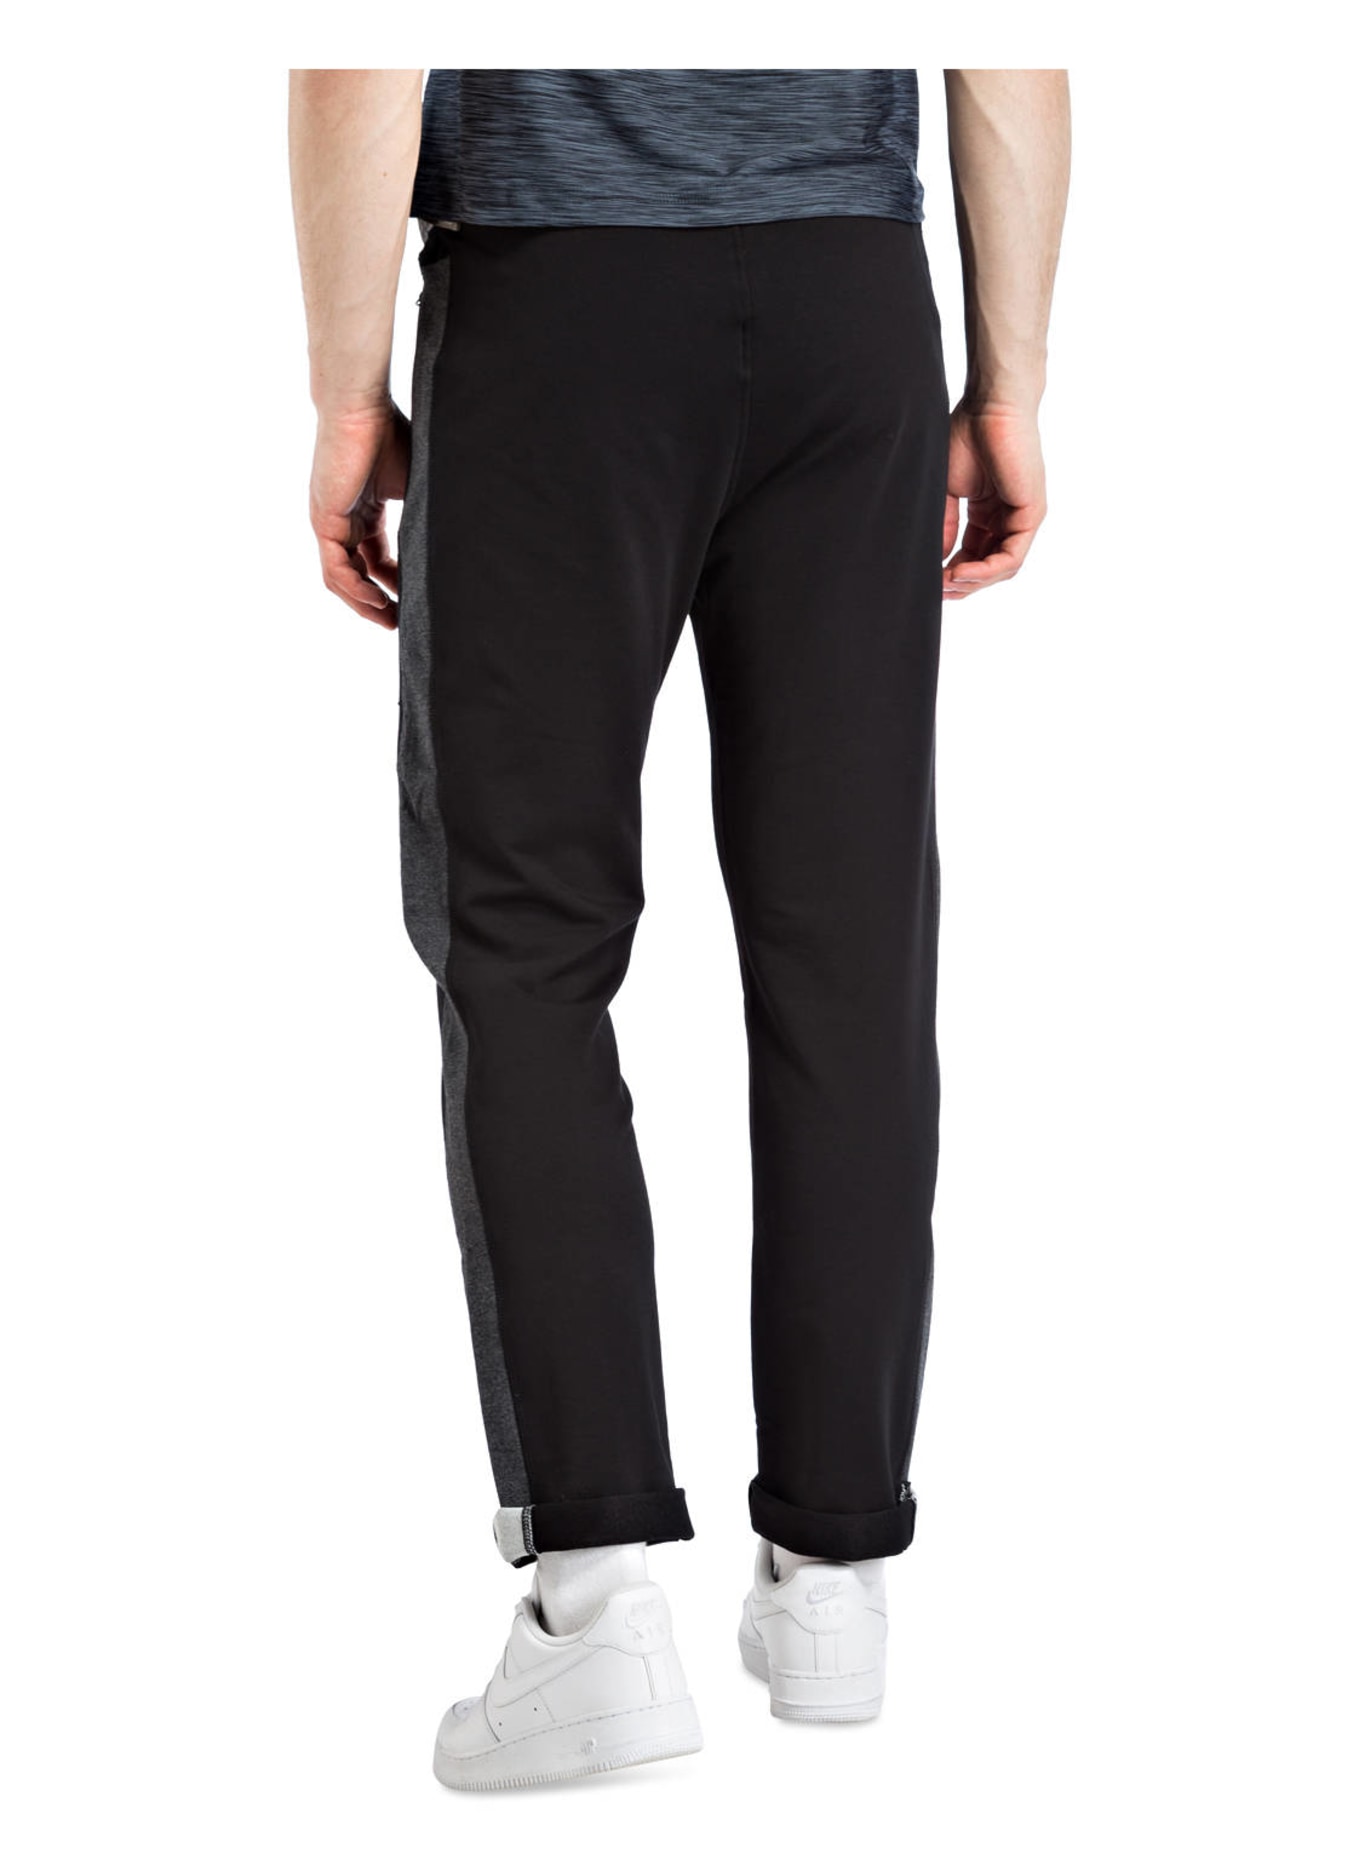 JOY sportswear Sweatpants FERNANDO, Color: BLACK (Image 3)